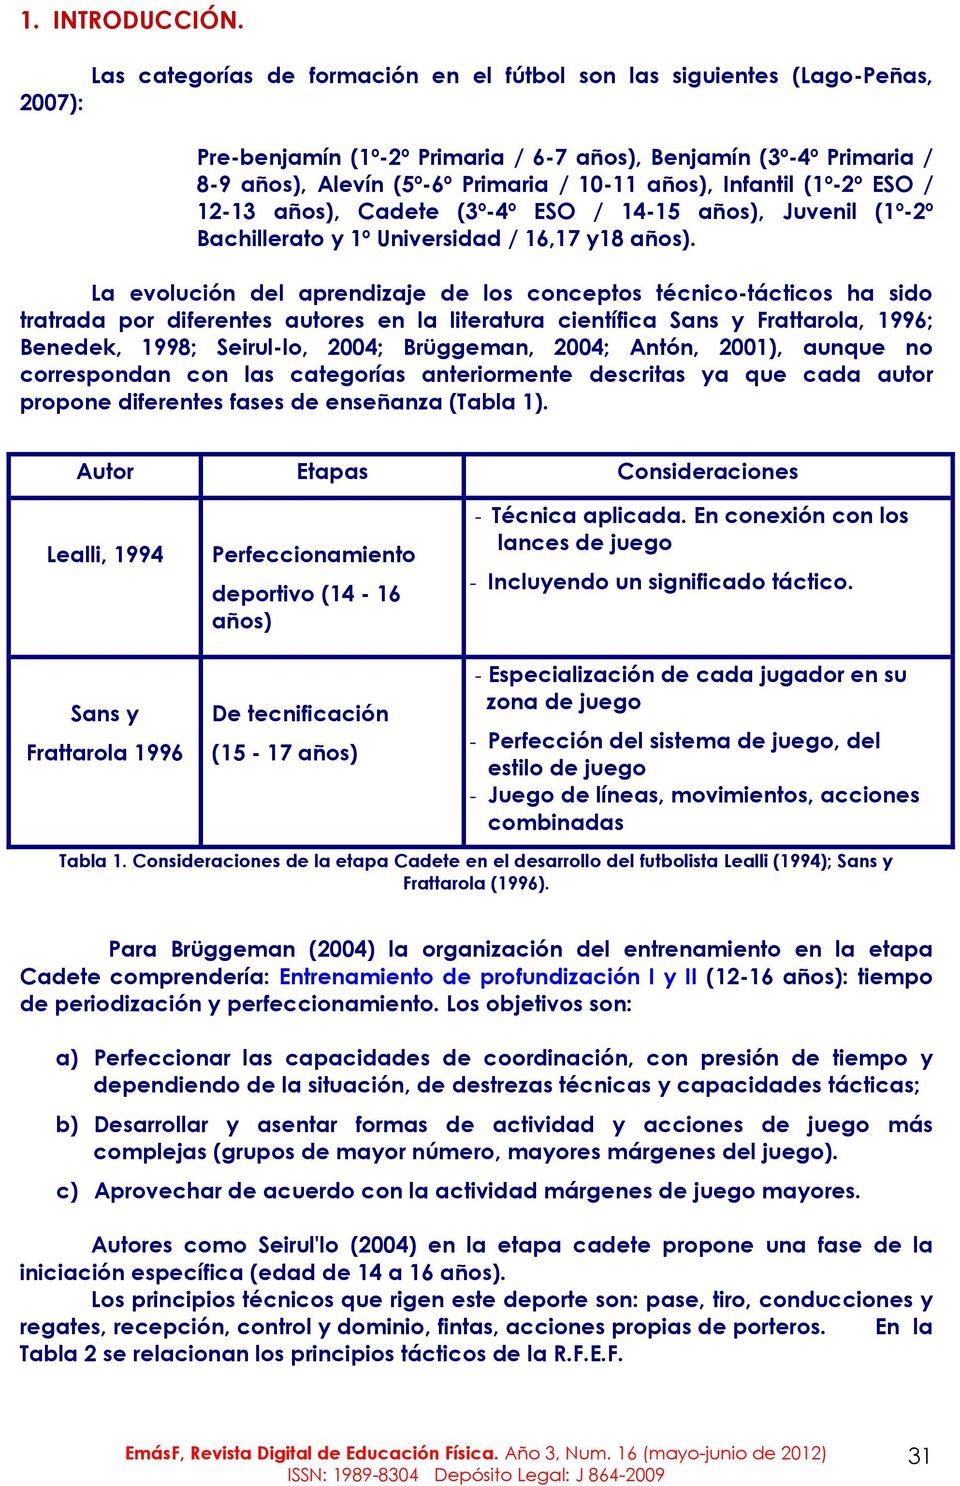 Infantil (1º-2º ESO / 12-13 años), Cadete (3º-4º ESO / 14-15 años), Juvenil (1º-2º Bachillerato y 1º Universidad / 16,17 y18 años).